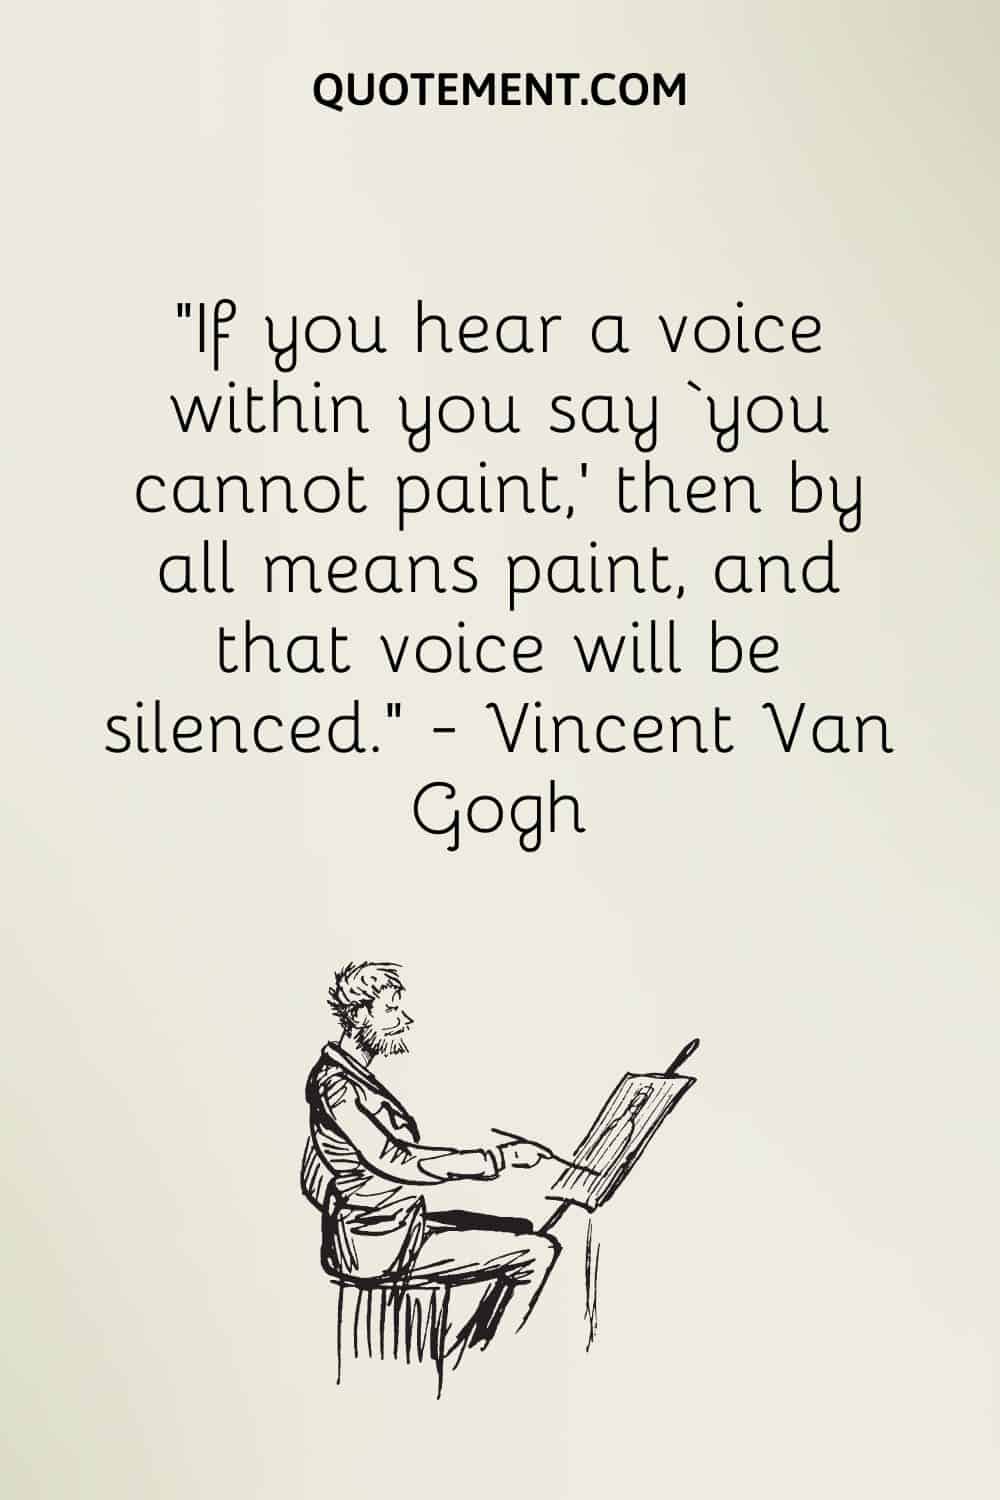 Si oyes una voz en tu interior que te dice "no puedes pintar", entonces pinta sin falta, y esa voz se acallará".